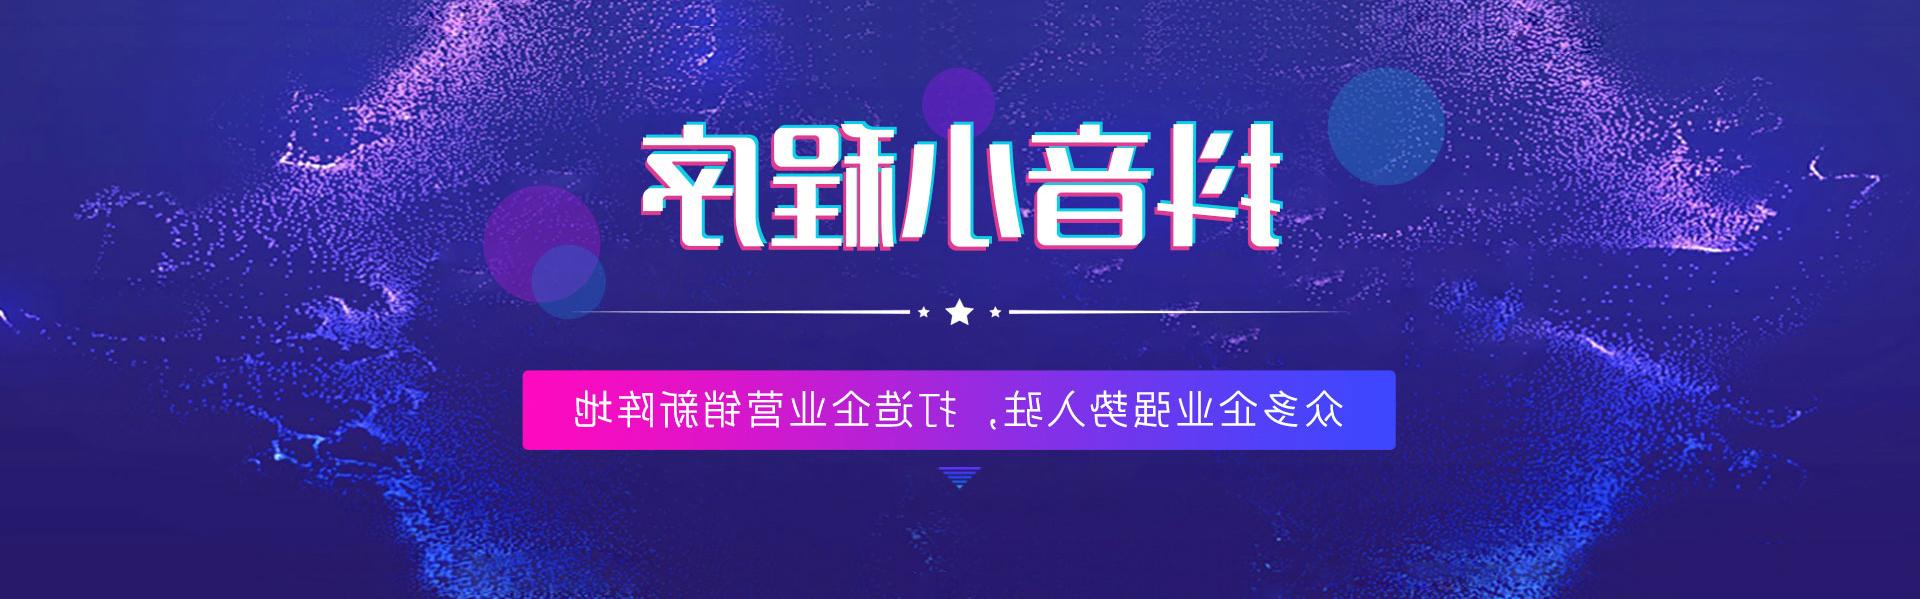 枣庄抖音世界杯足彩app,打造企业营销新阵地